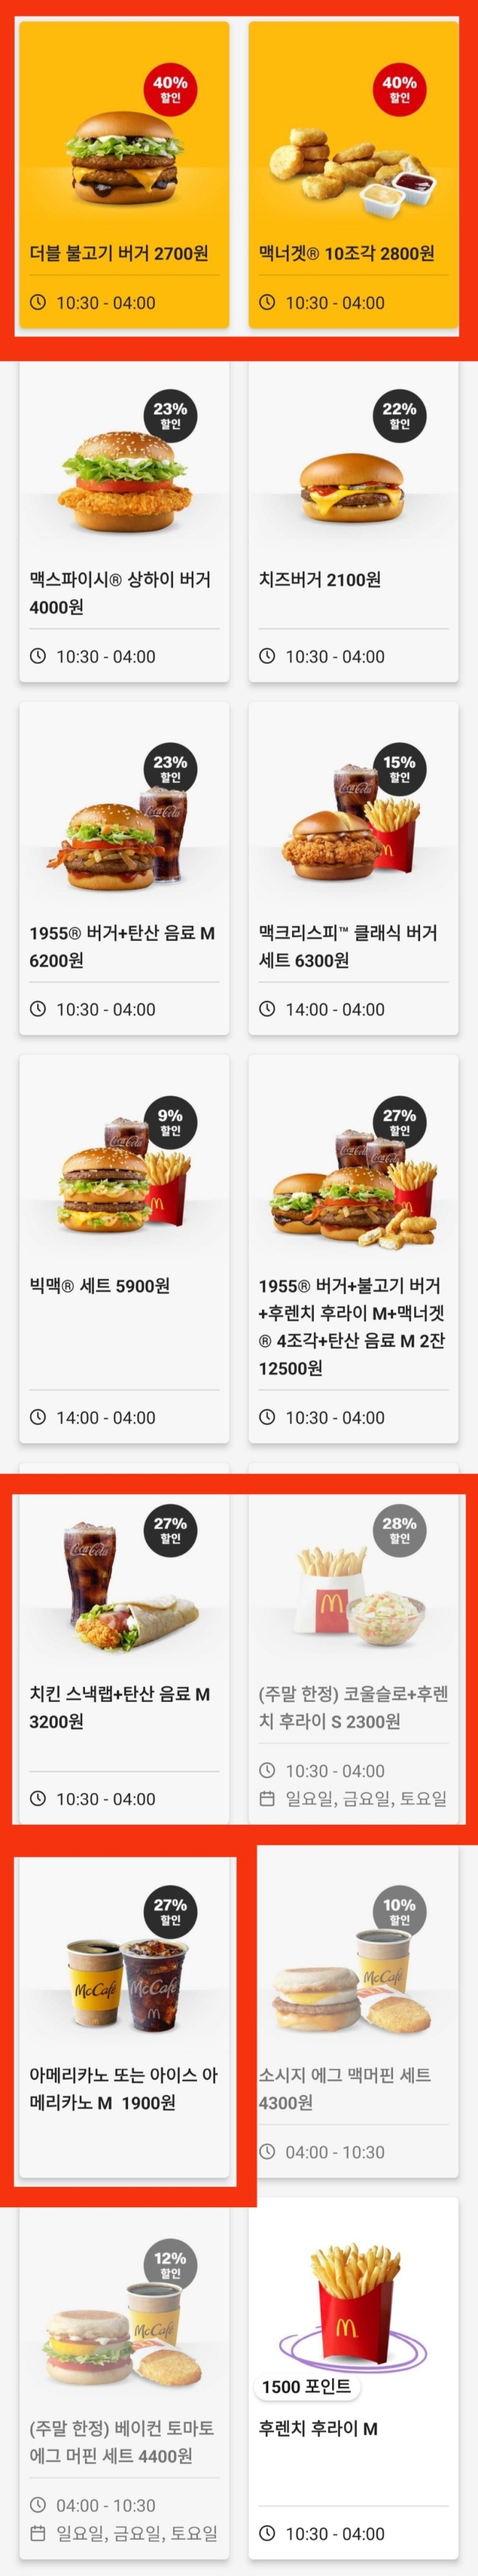 맥도날드 앱 금주 할인 쿠폰 23년 3월 2주